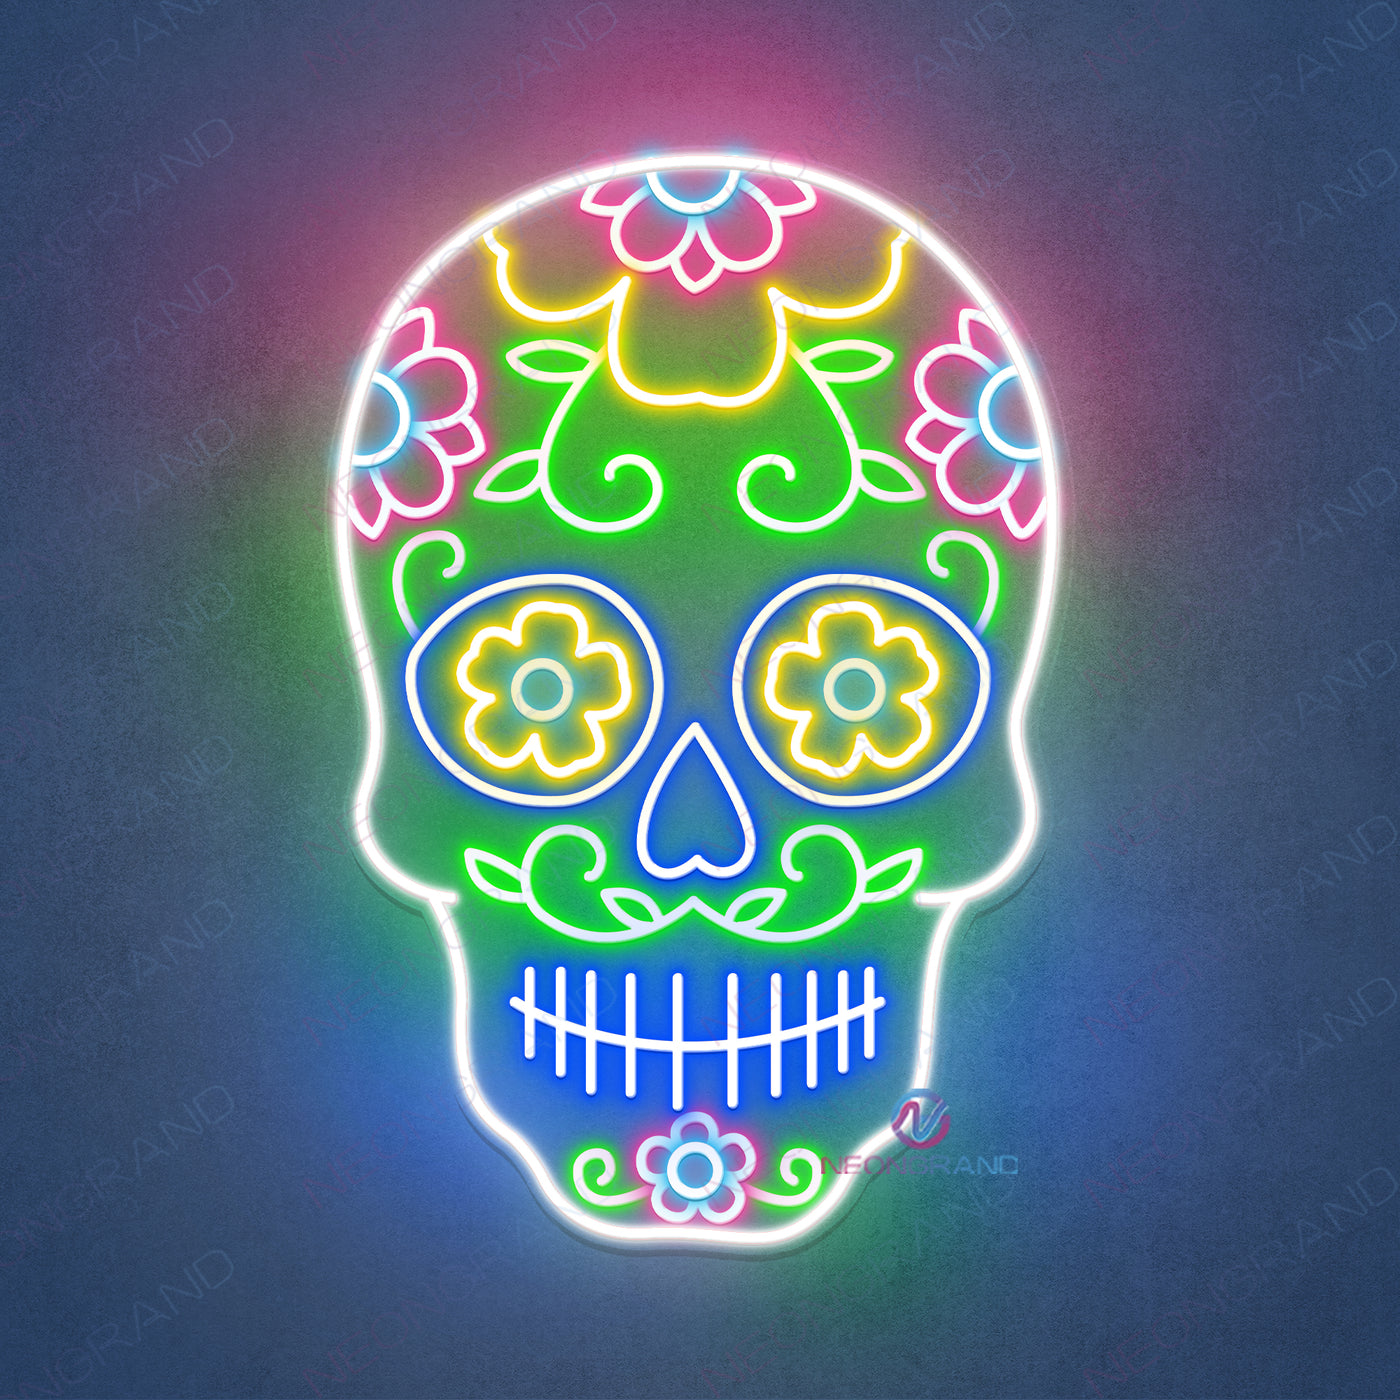 Skull Neon Sign Skeleton Led Light